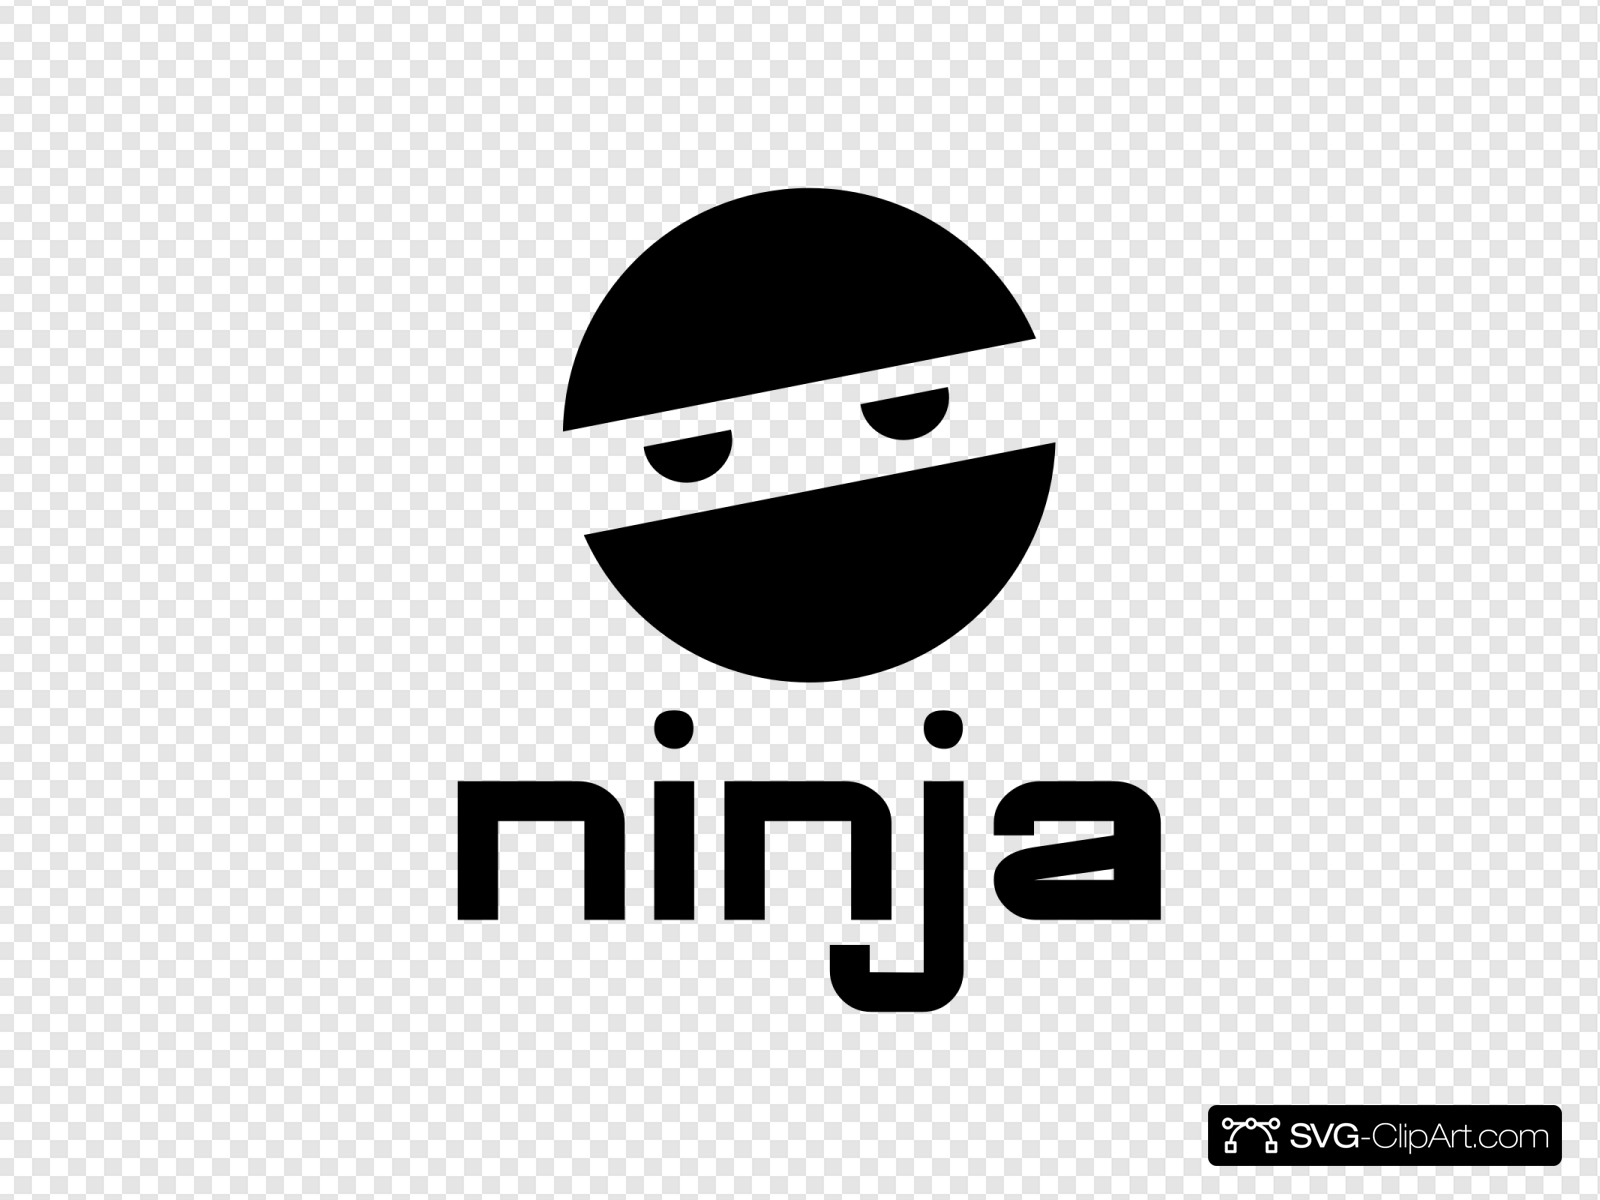 Ninja clip art.